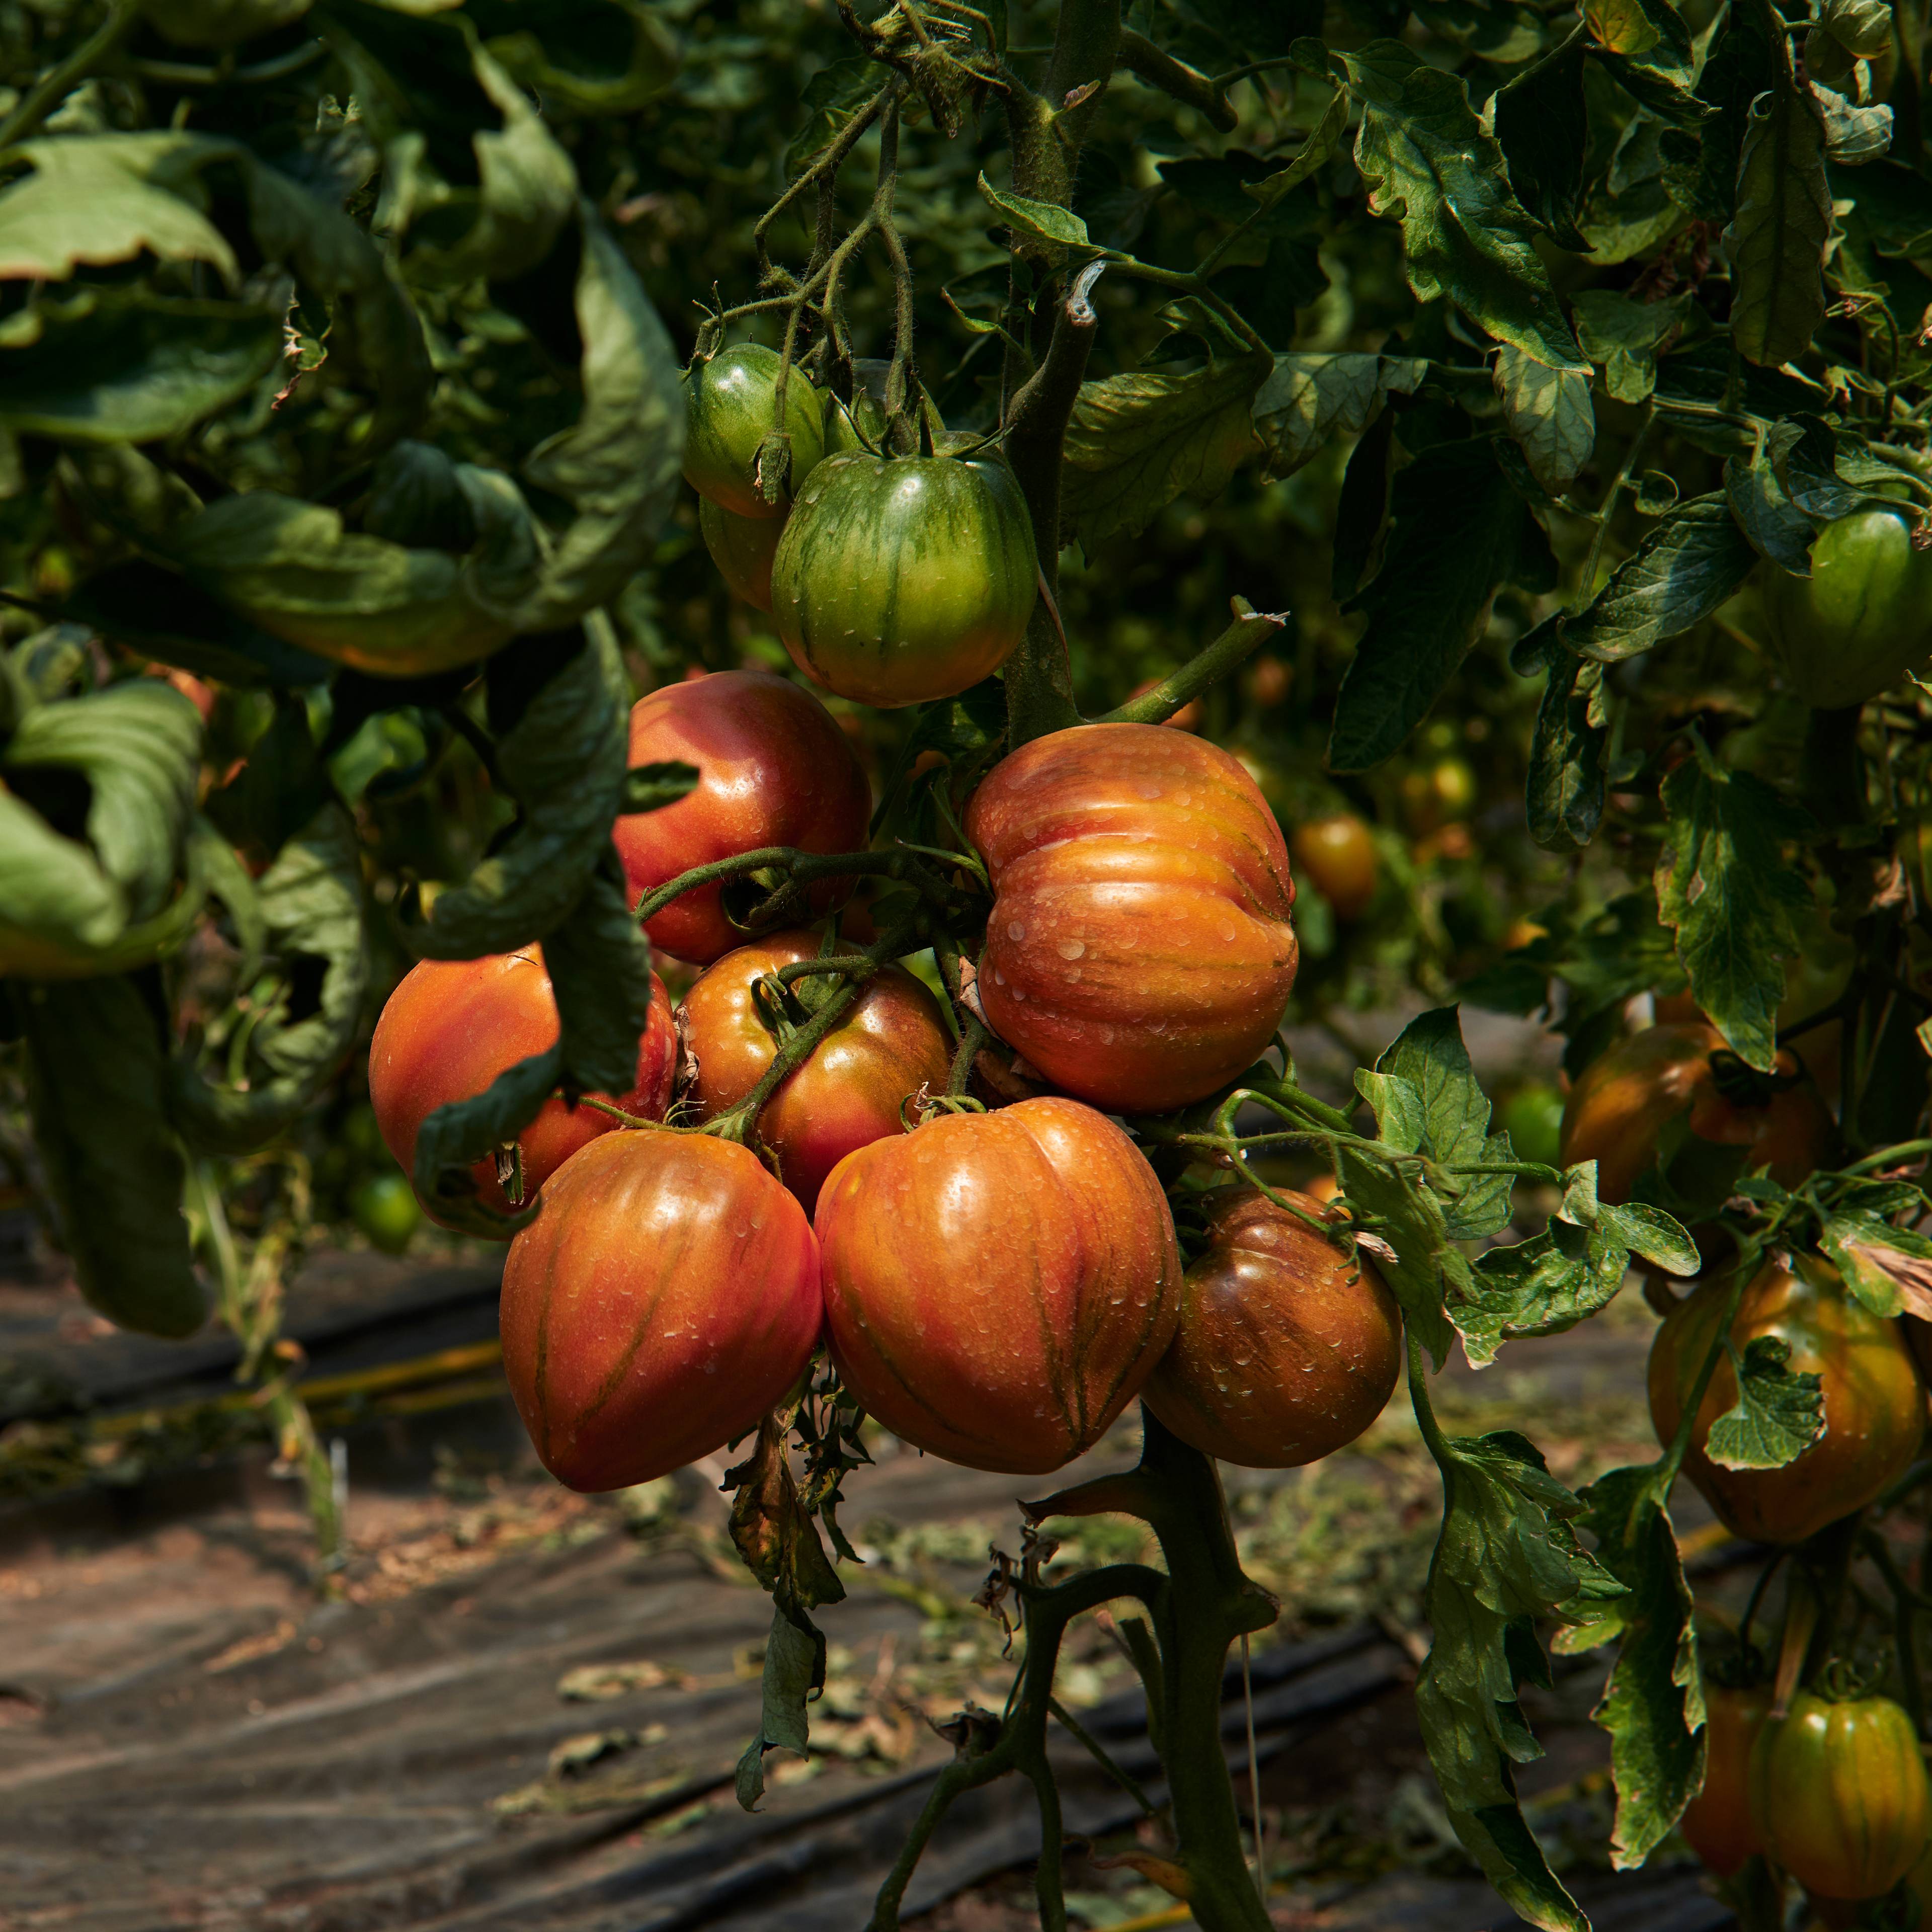 Cuore del vesuvio tomatoes growing on the vine